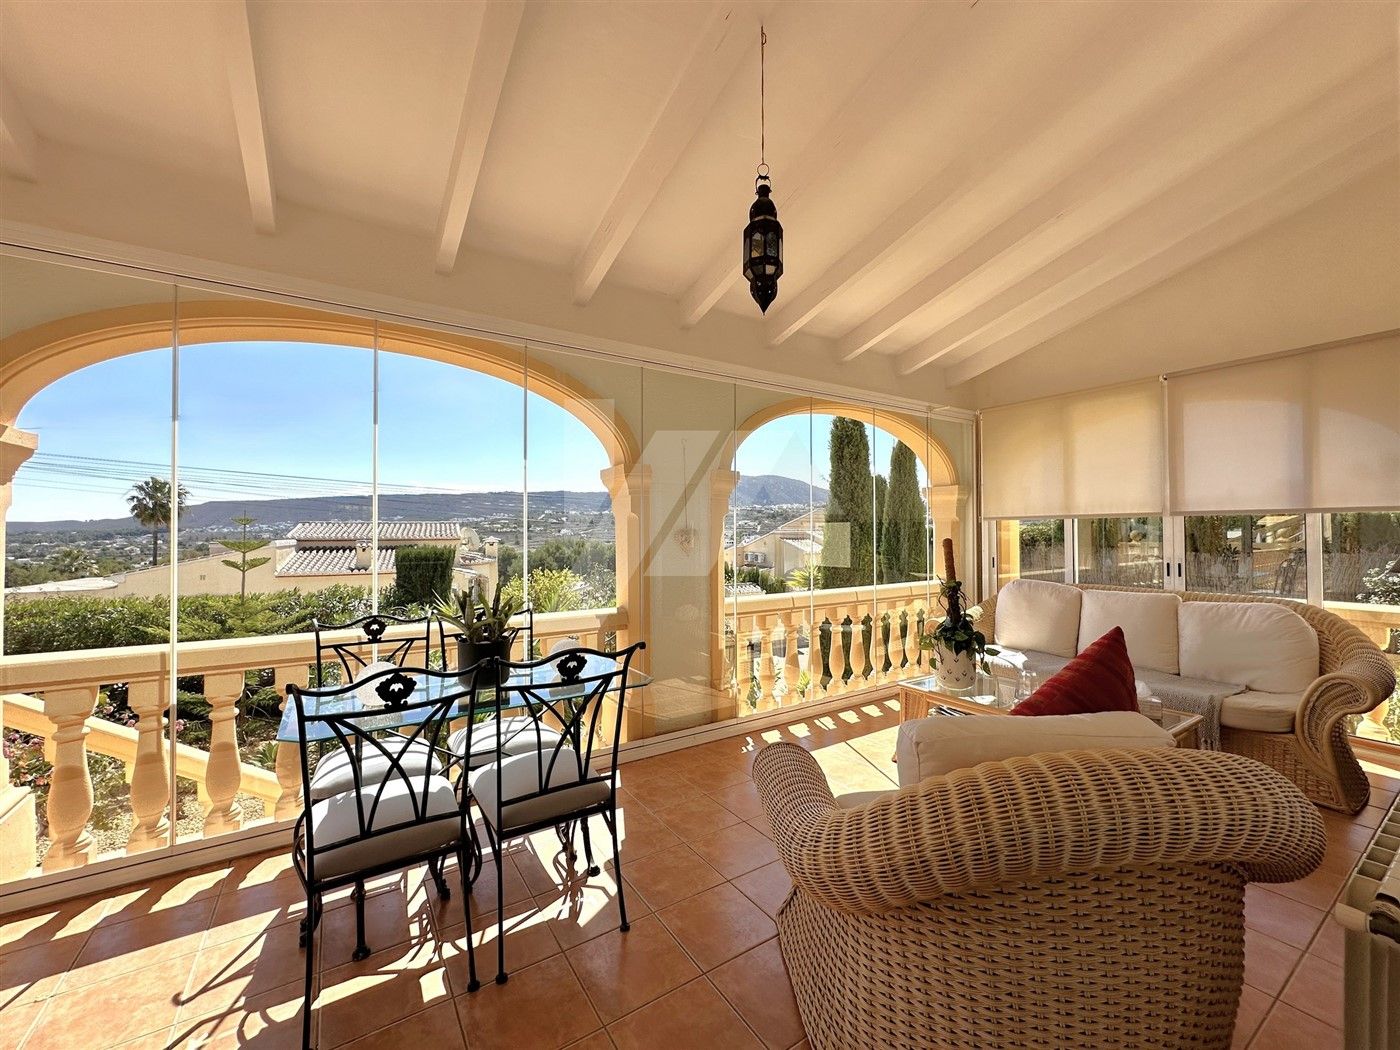 Encantadora villa mediterránea en venta en Benitachell, con vistas abiertas a la montaña.